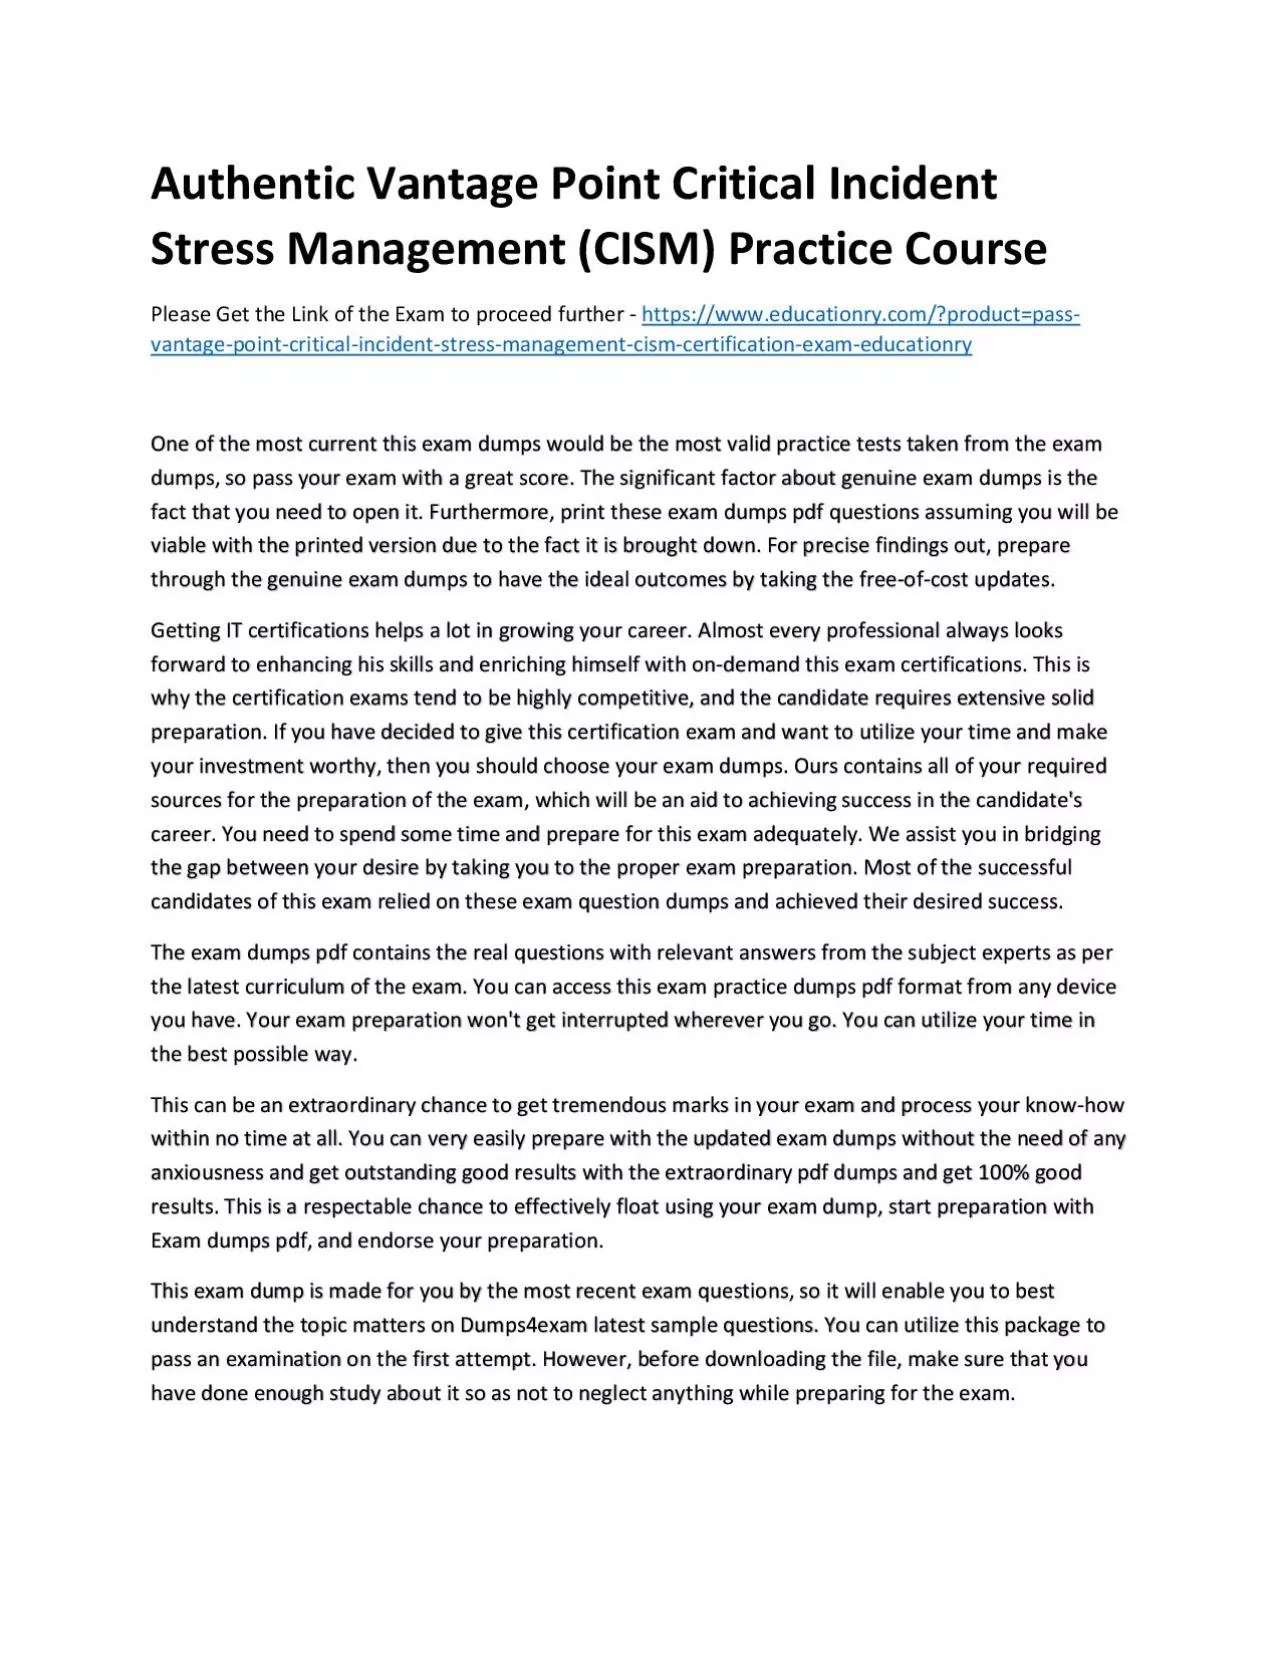 Authentic Vantage Point Critical Incident Stress Management (CISM) Practice Course